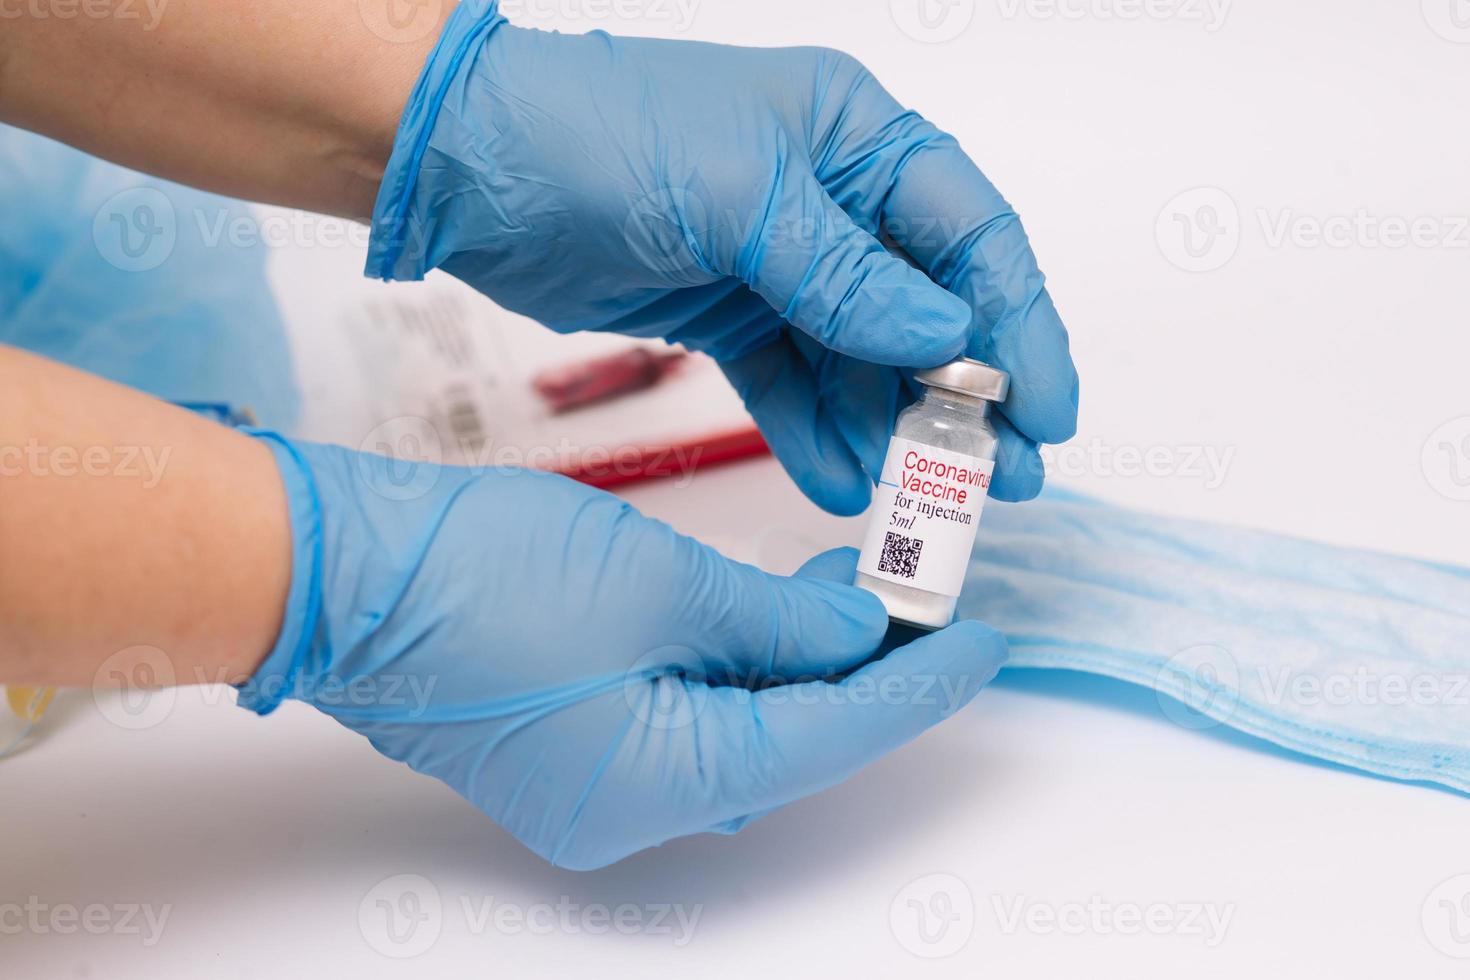 coronavaccin. arts met een vaccin. handen met een ampul van het coronavirusvaccin, covid-19 foto